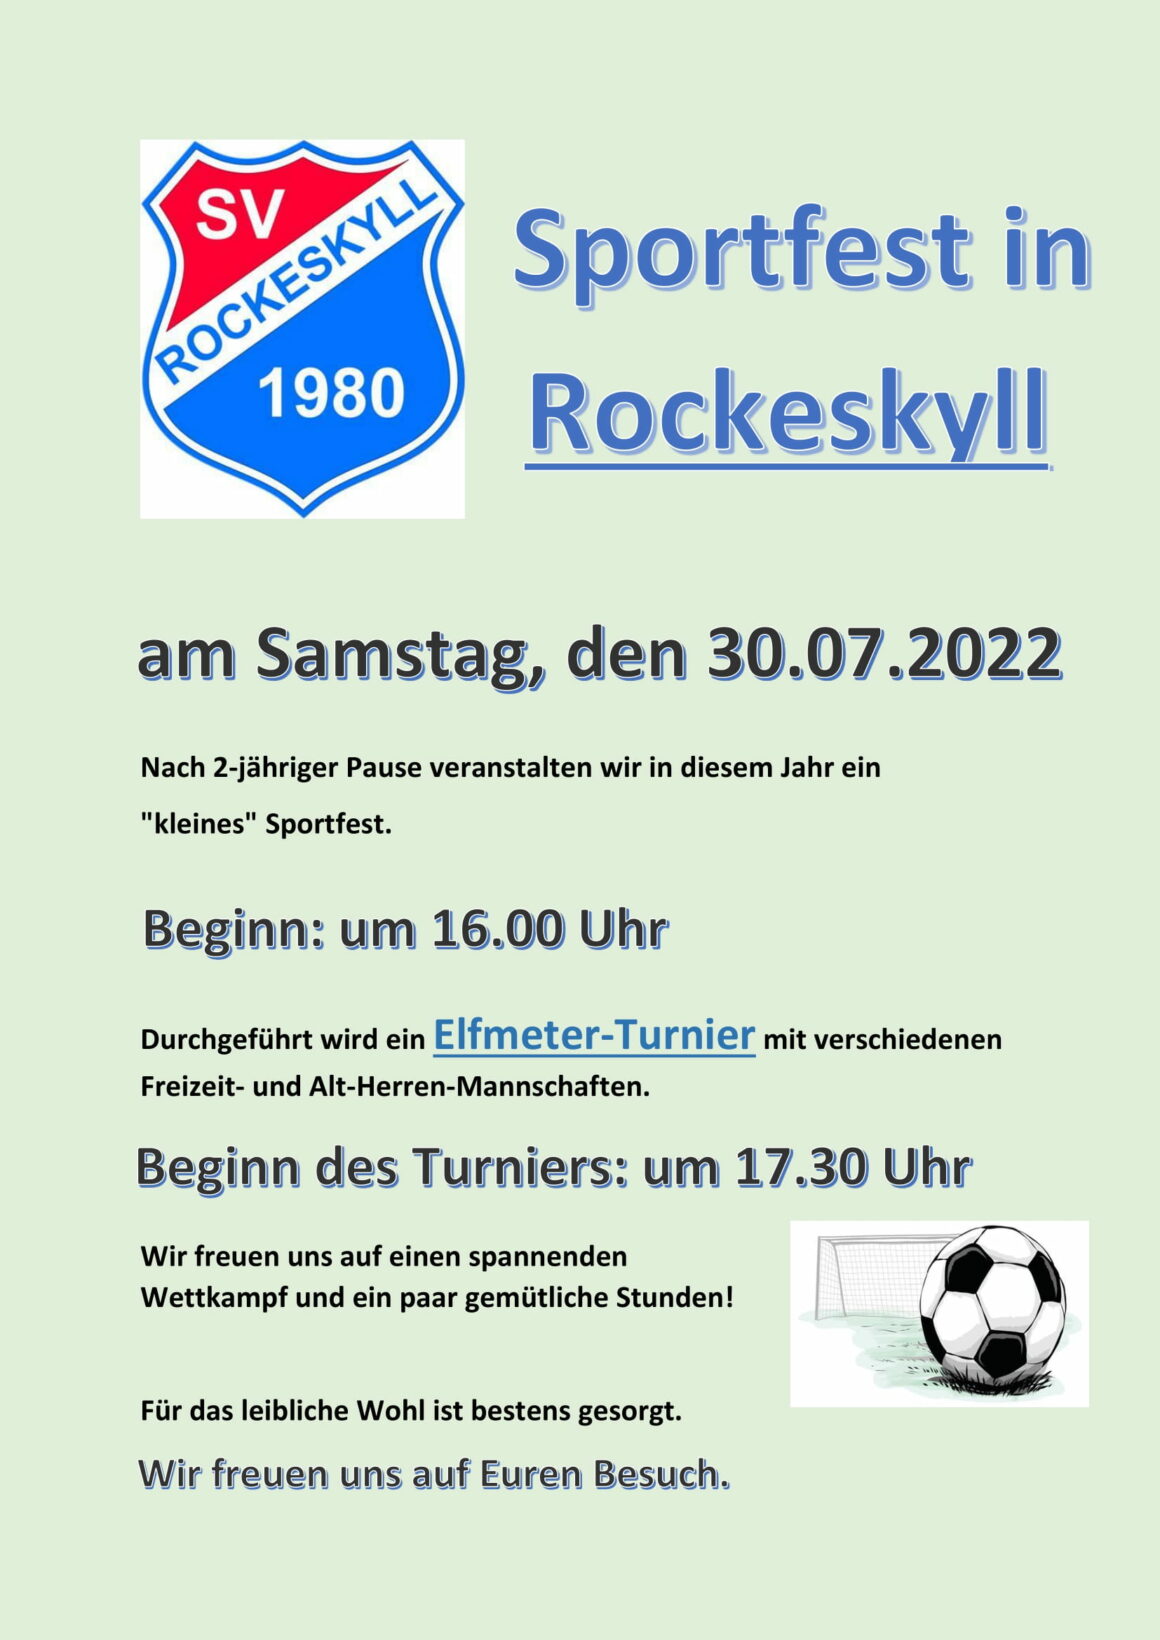 Sportfest am 30.07.2022